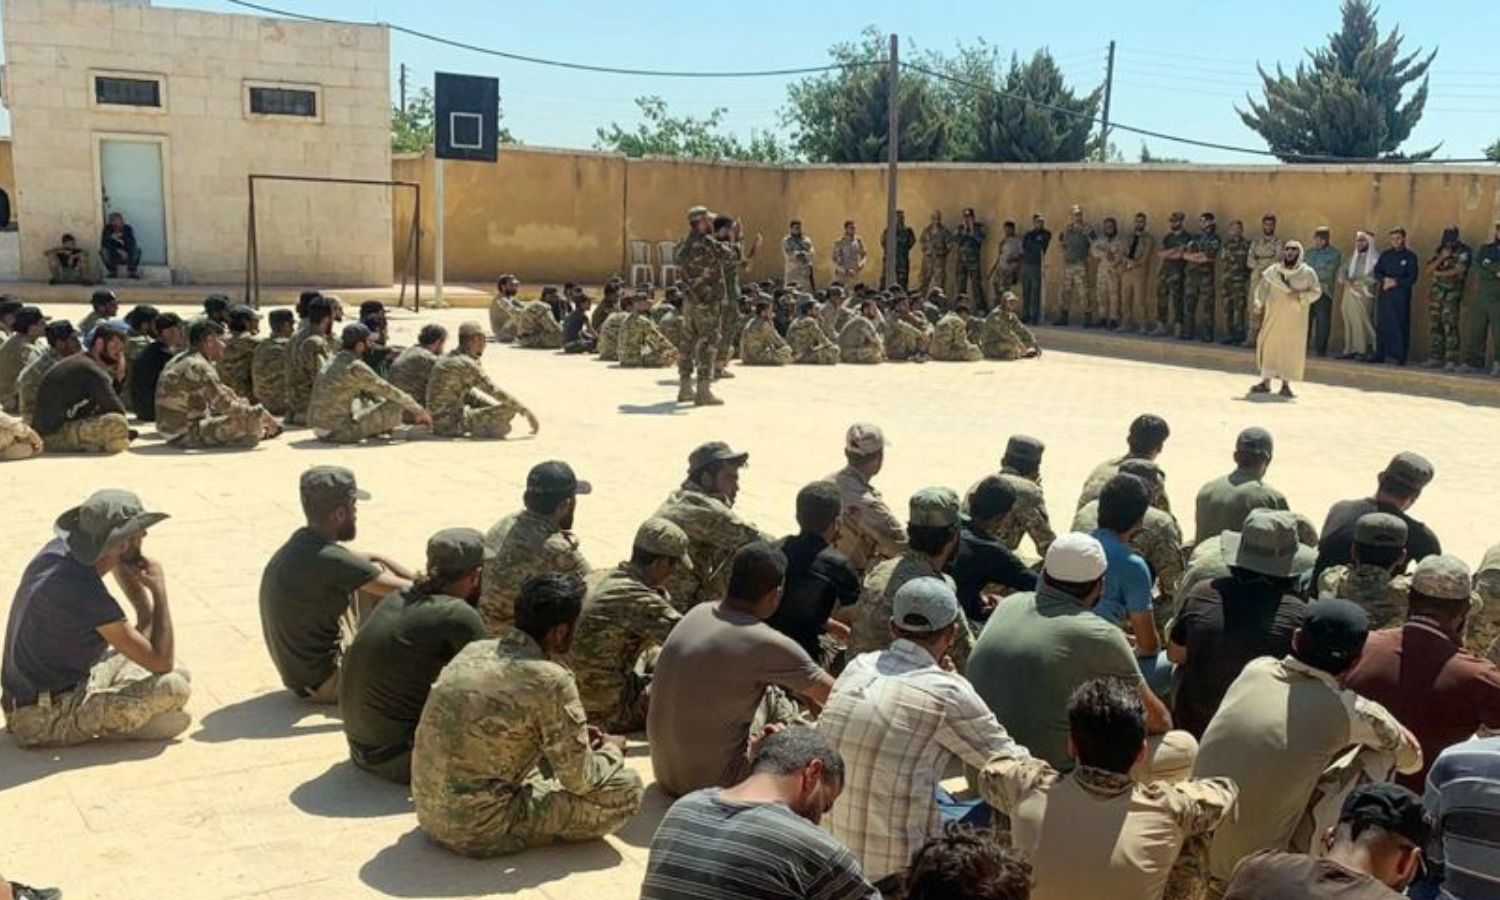 أعضاء المكتب الشرعي لـ"فيلق الشام" في أحد معسكرات الفصيل شمال غربي سوريا- 19 من آب 2020 (فيلق الشام)